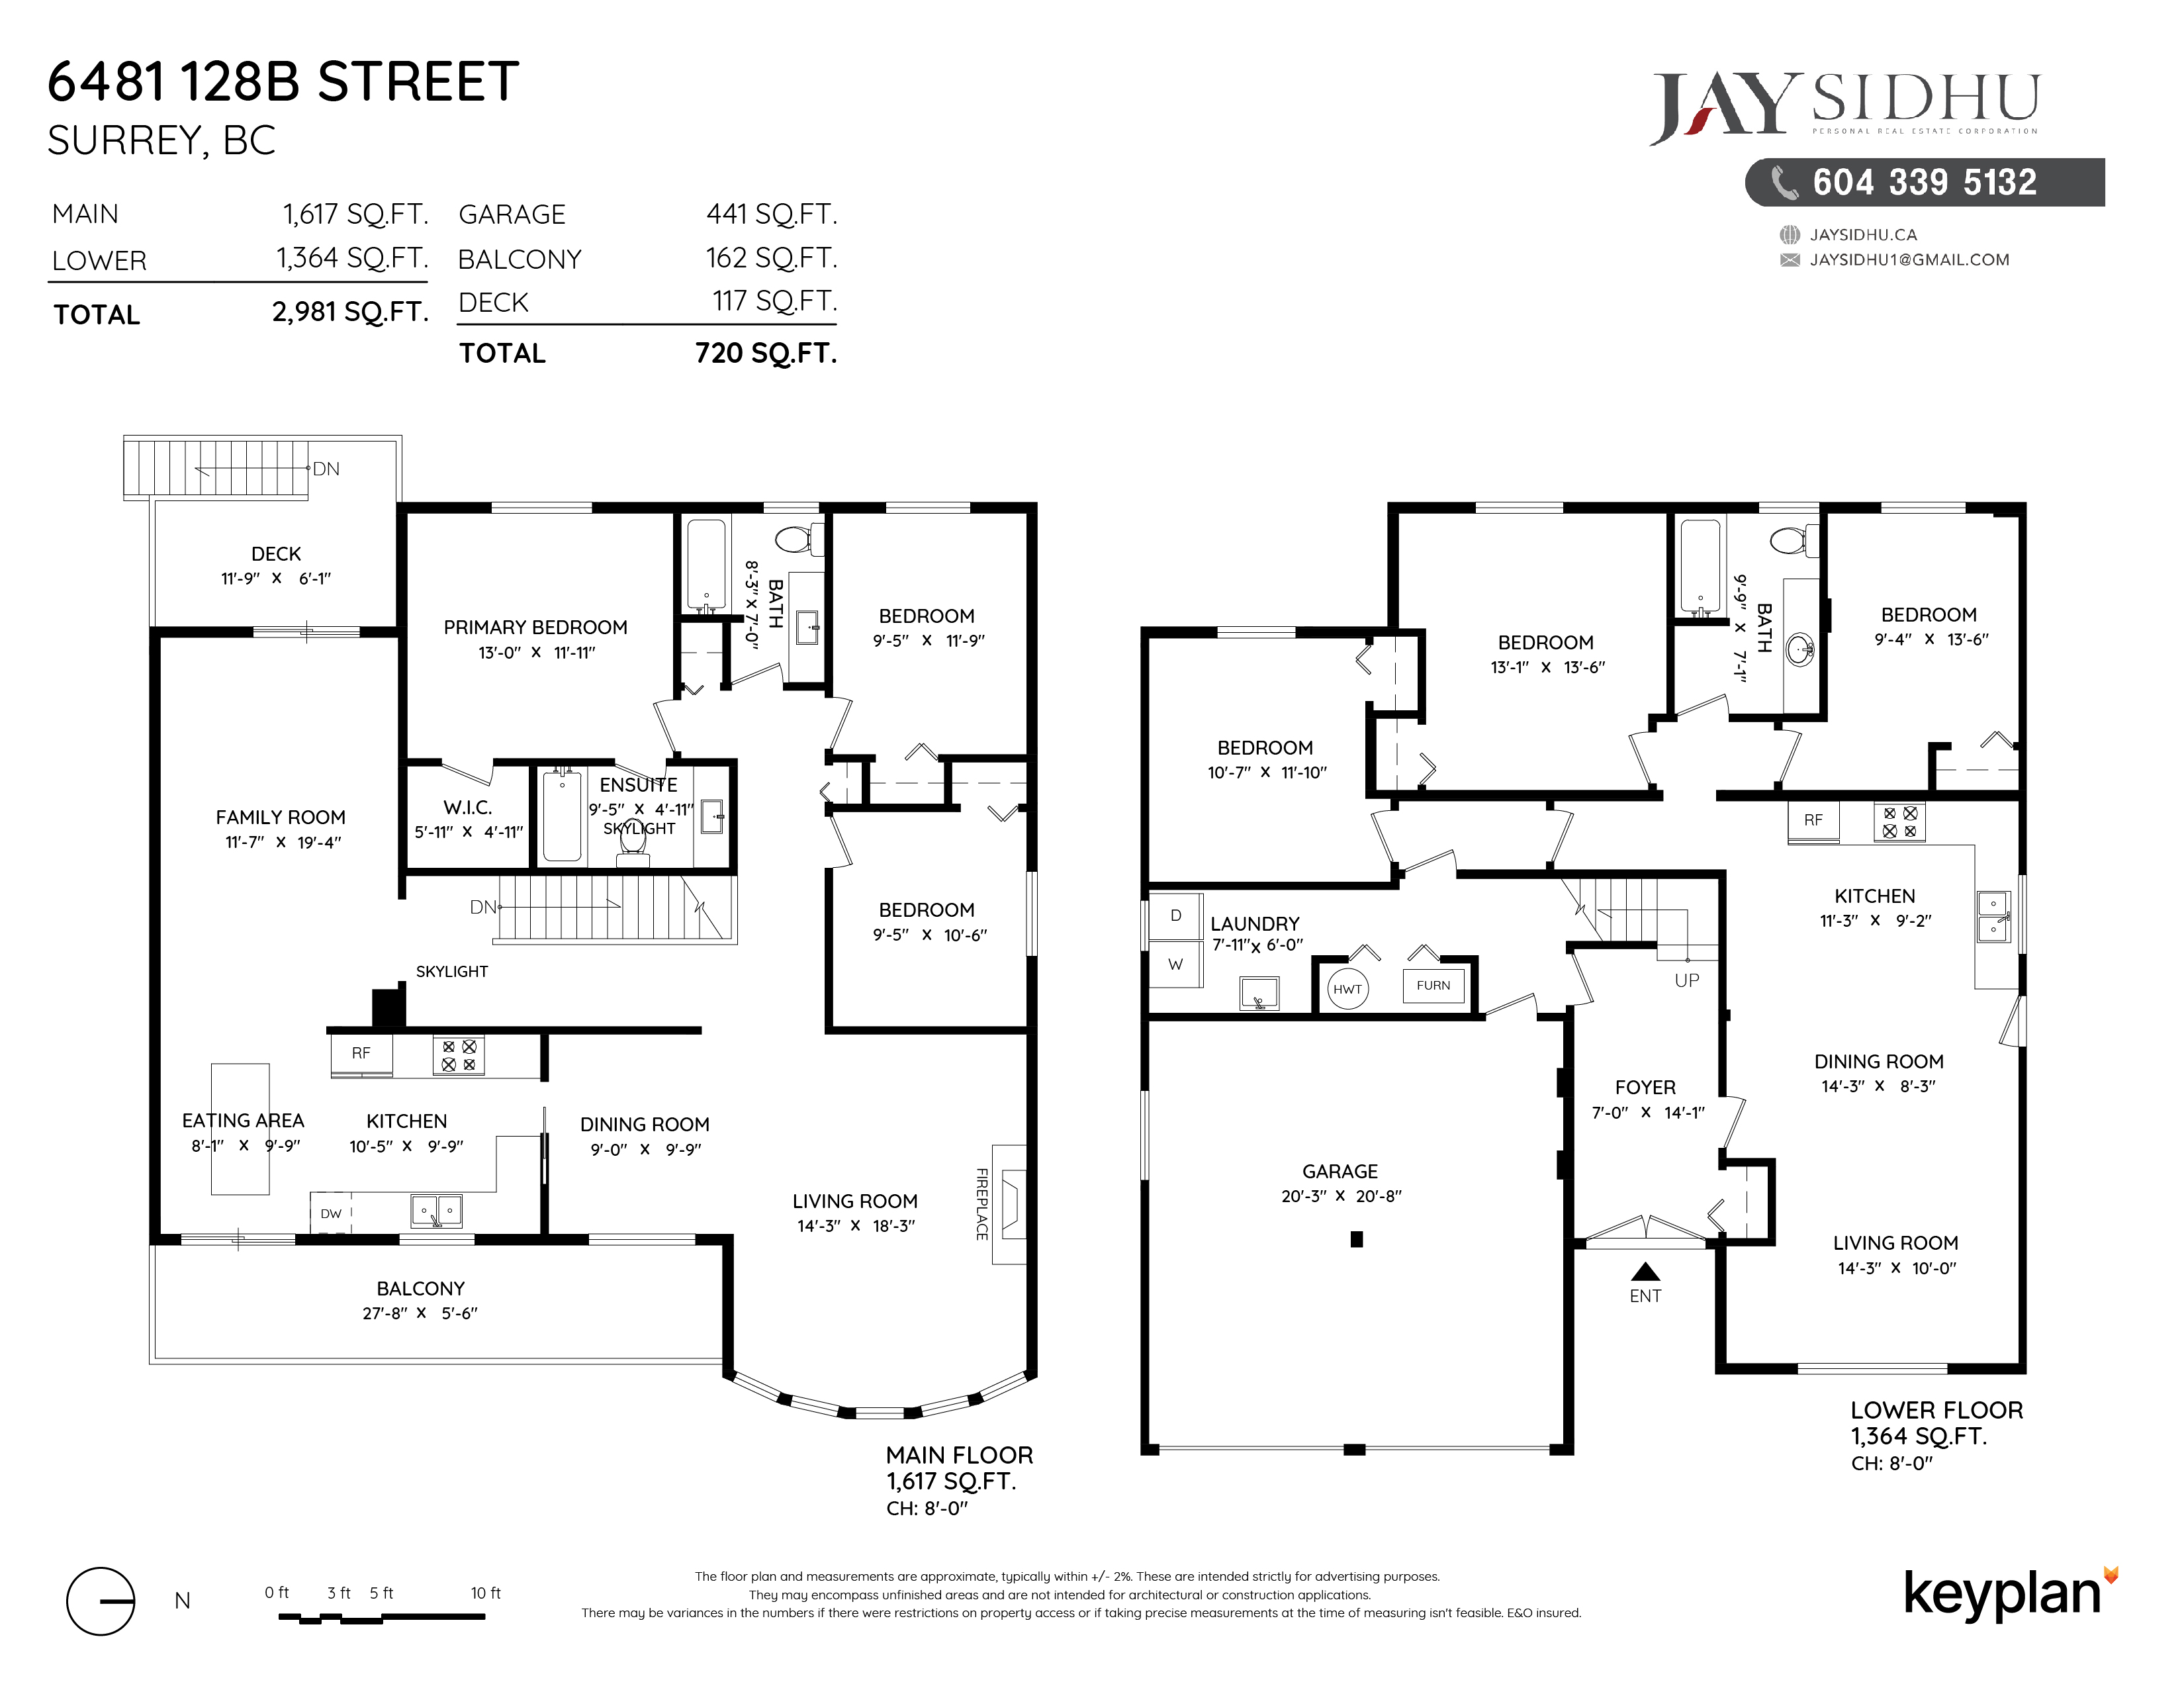 Jay Sidhu - 6481 128B Street, Surrey, BC, Canada | Floor Plan 1